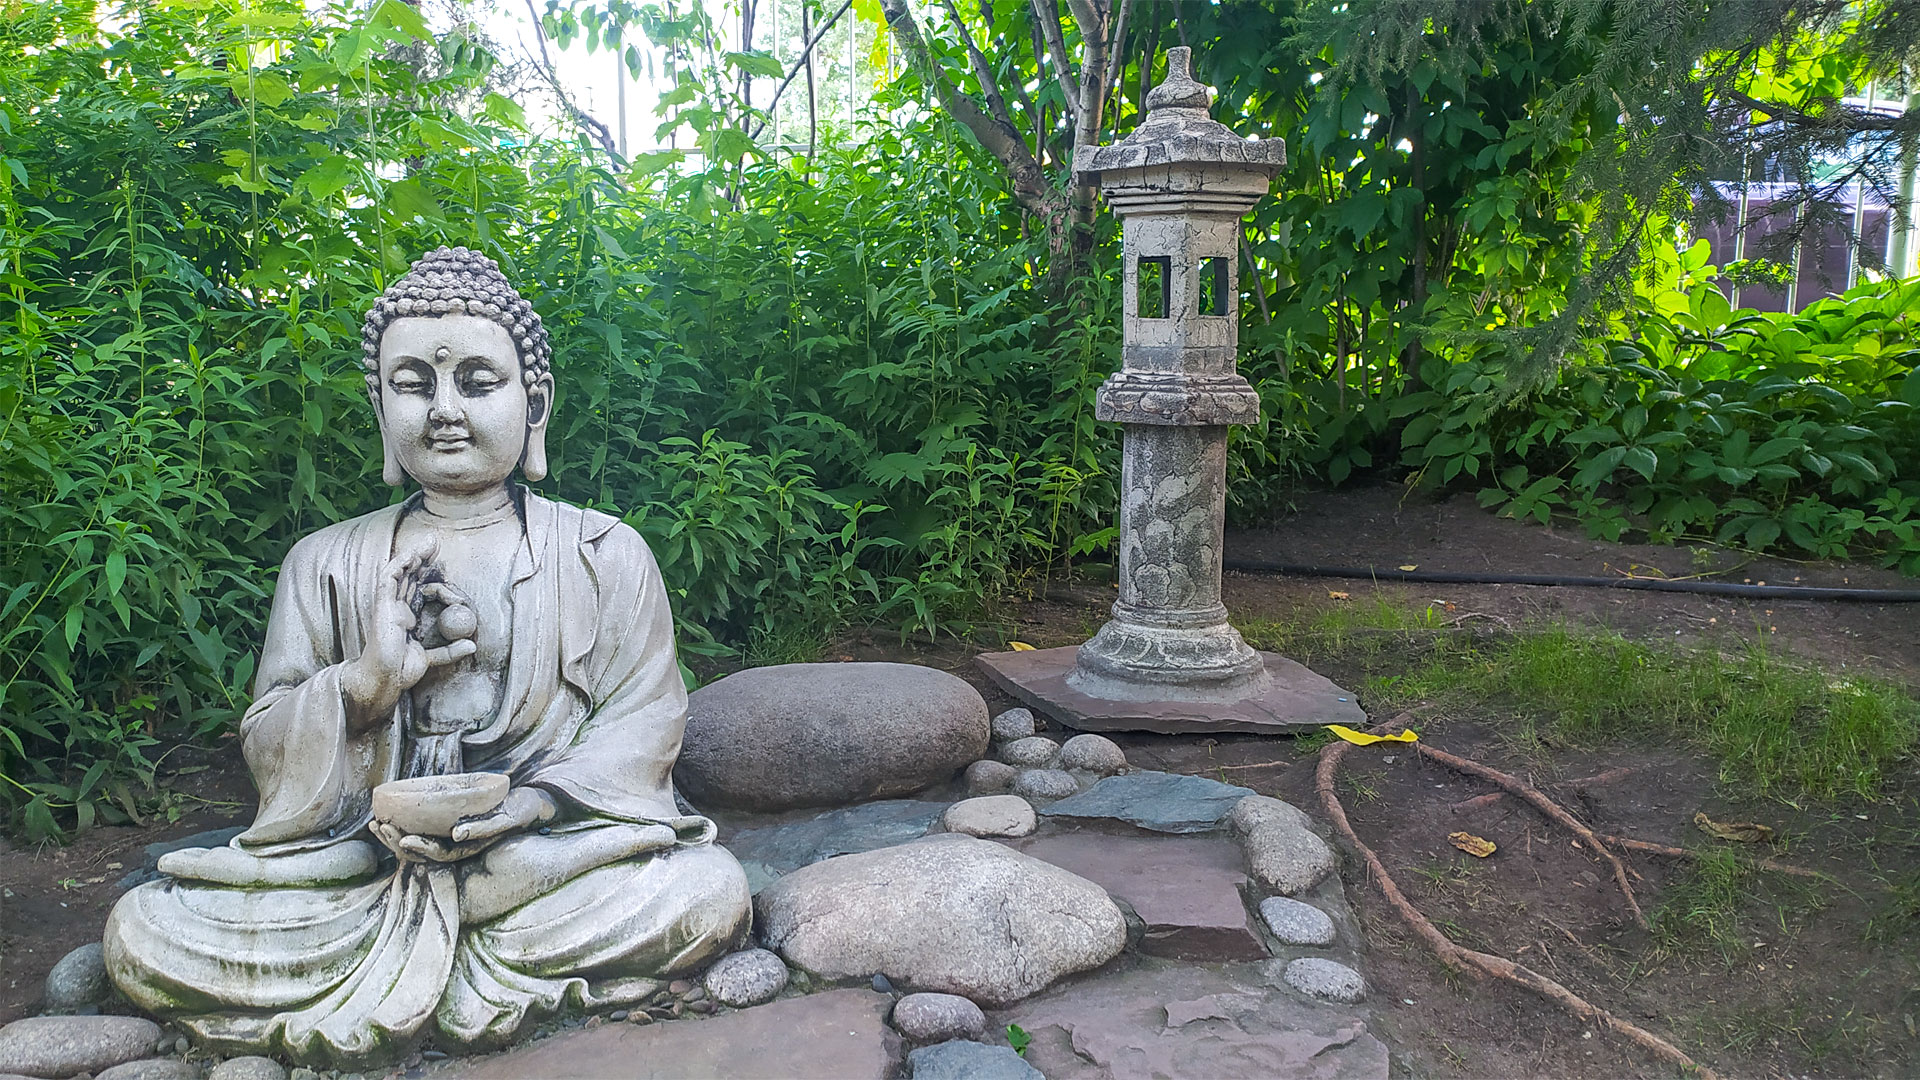 Будда сидит на камнях, среди кустарника.